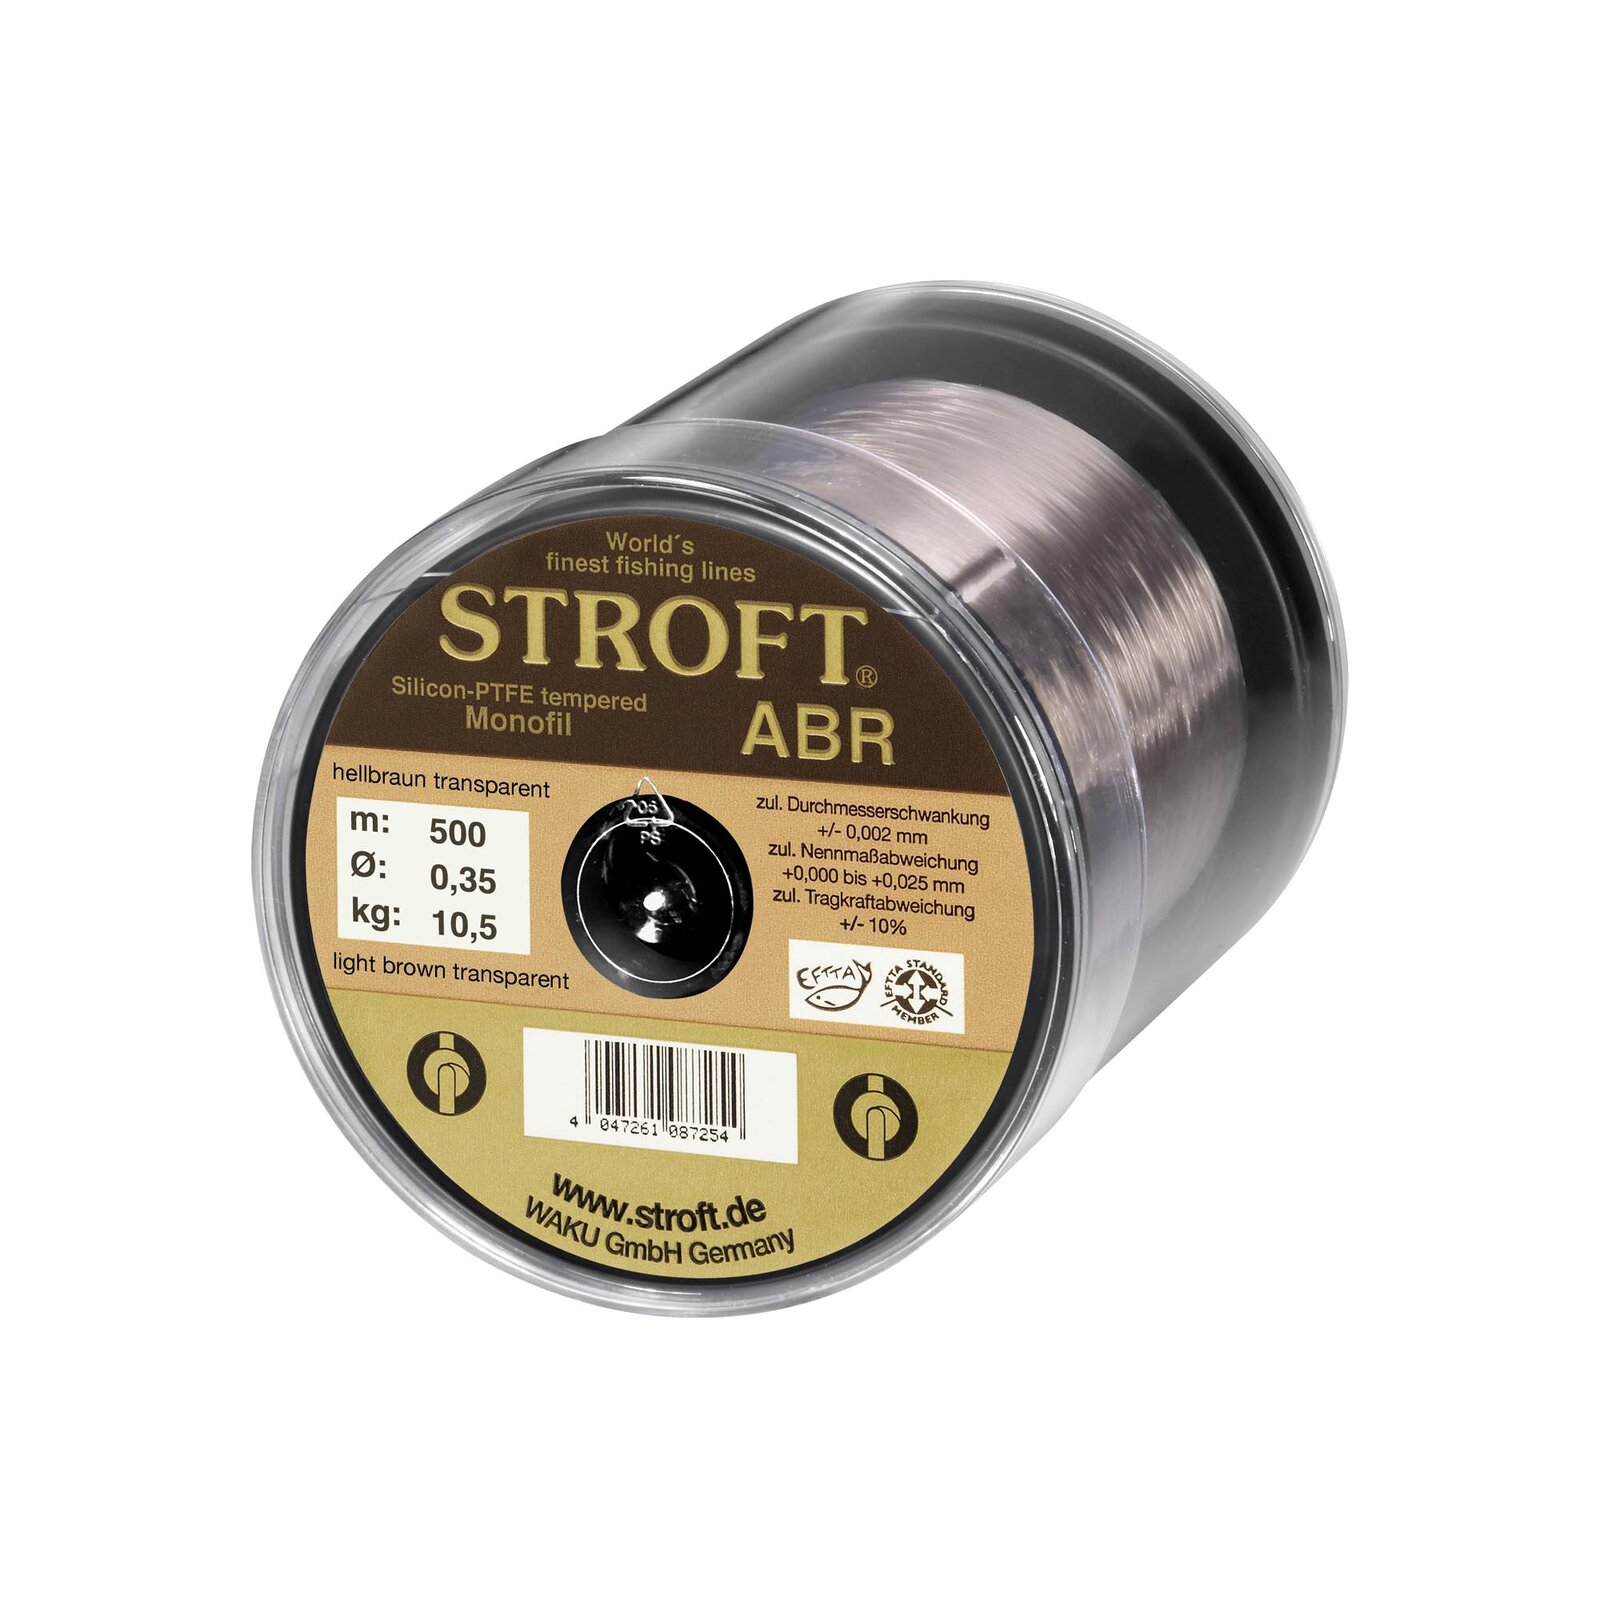 Rolle bespulen mit: STROFT ABR Monofil | 1,0m  0,25mm | 6,40kg